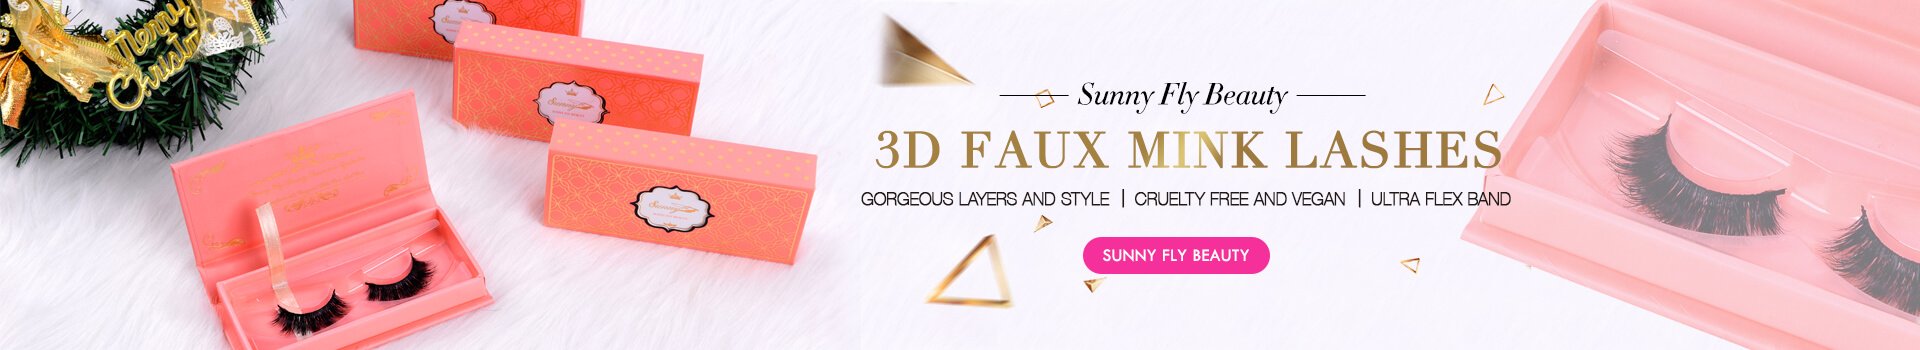 3D Faux Mink Lashes SD67